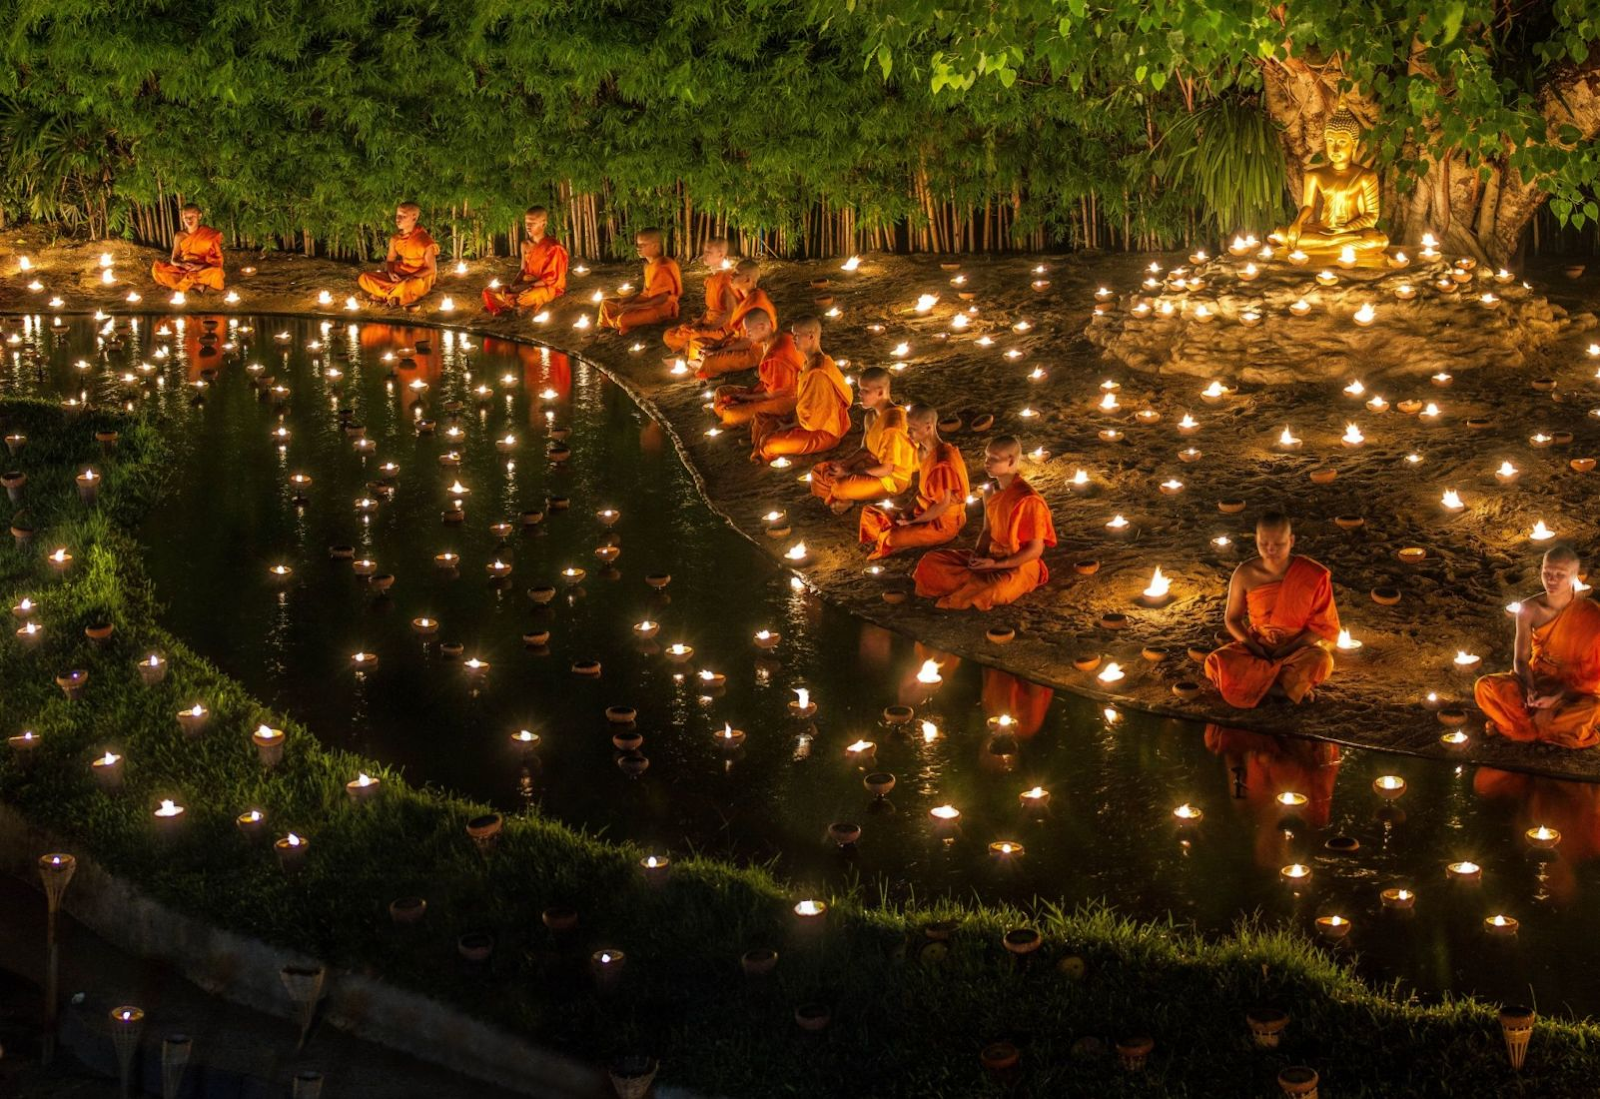 Buddhist rituals in Thailand